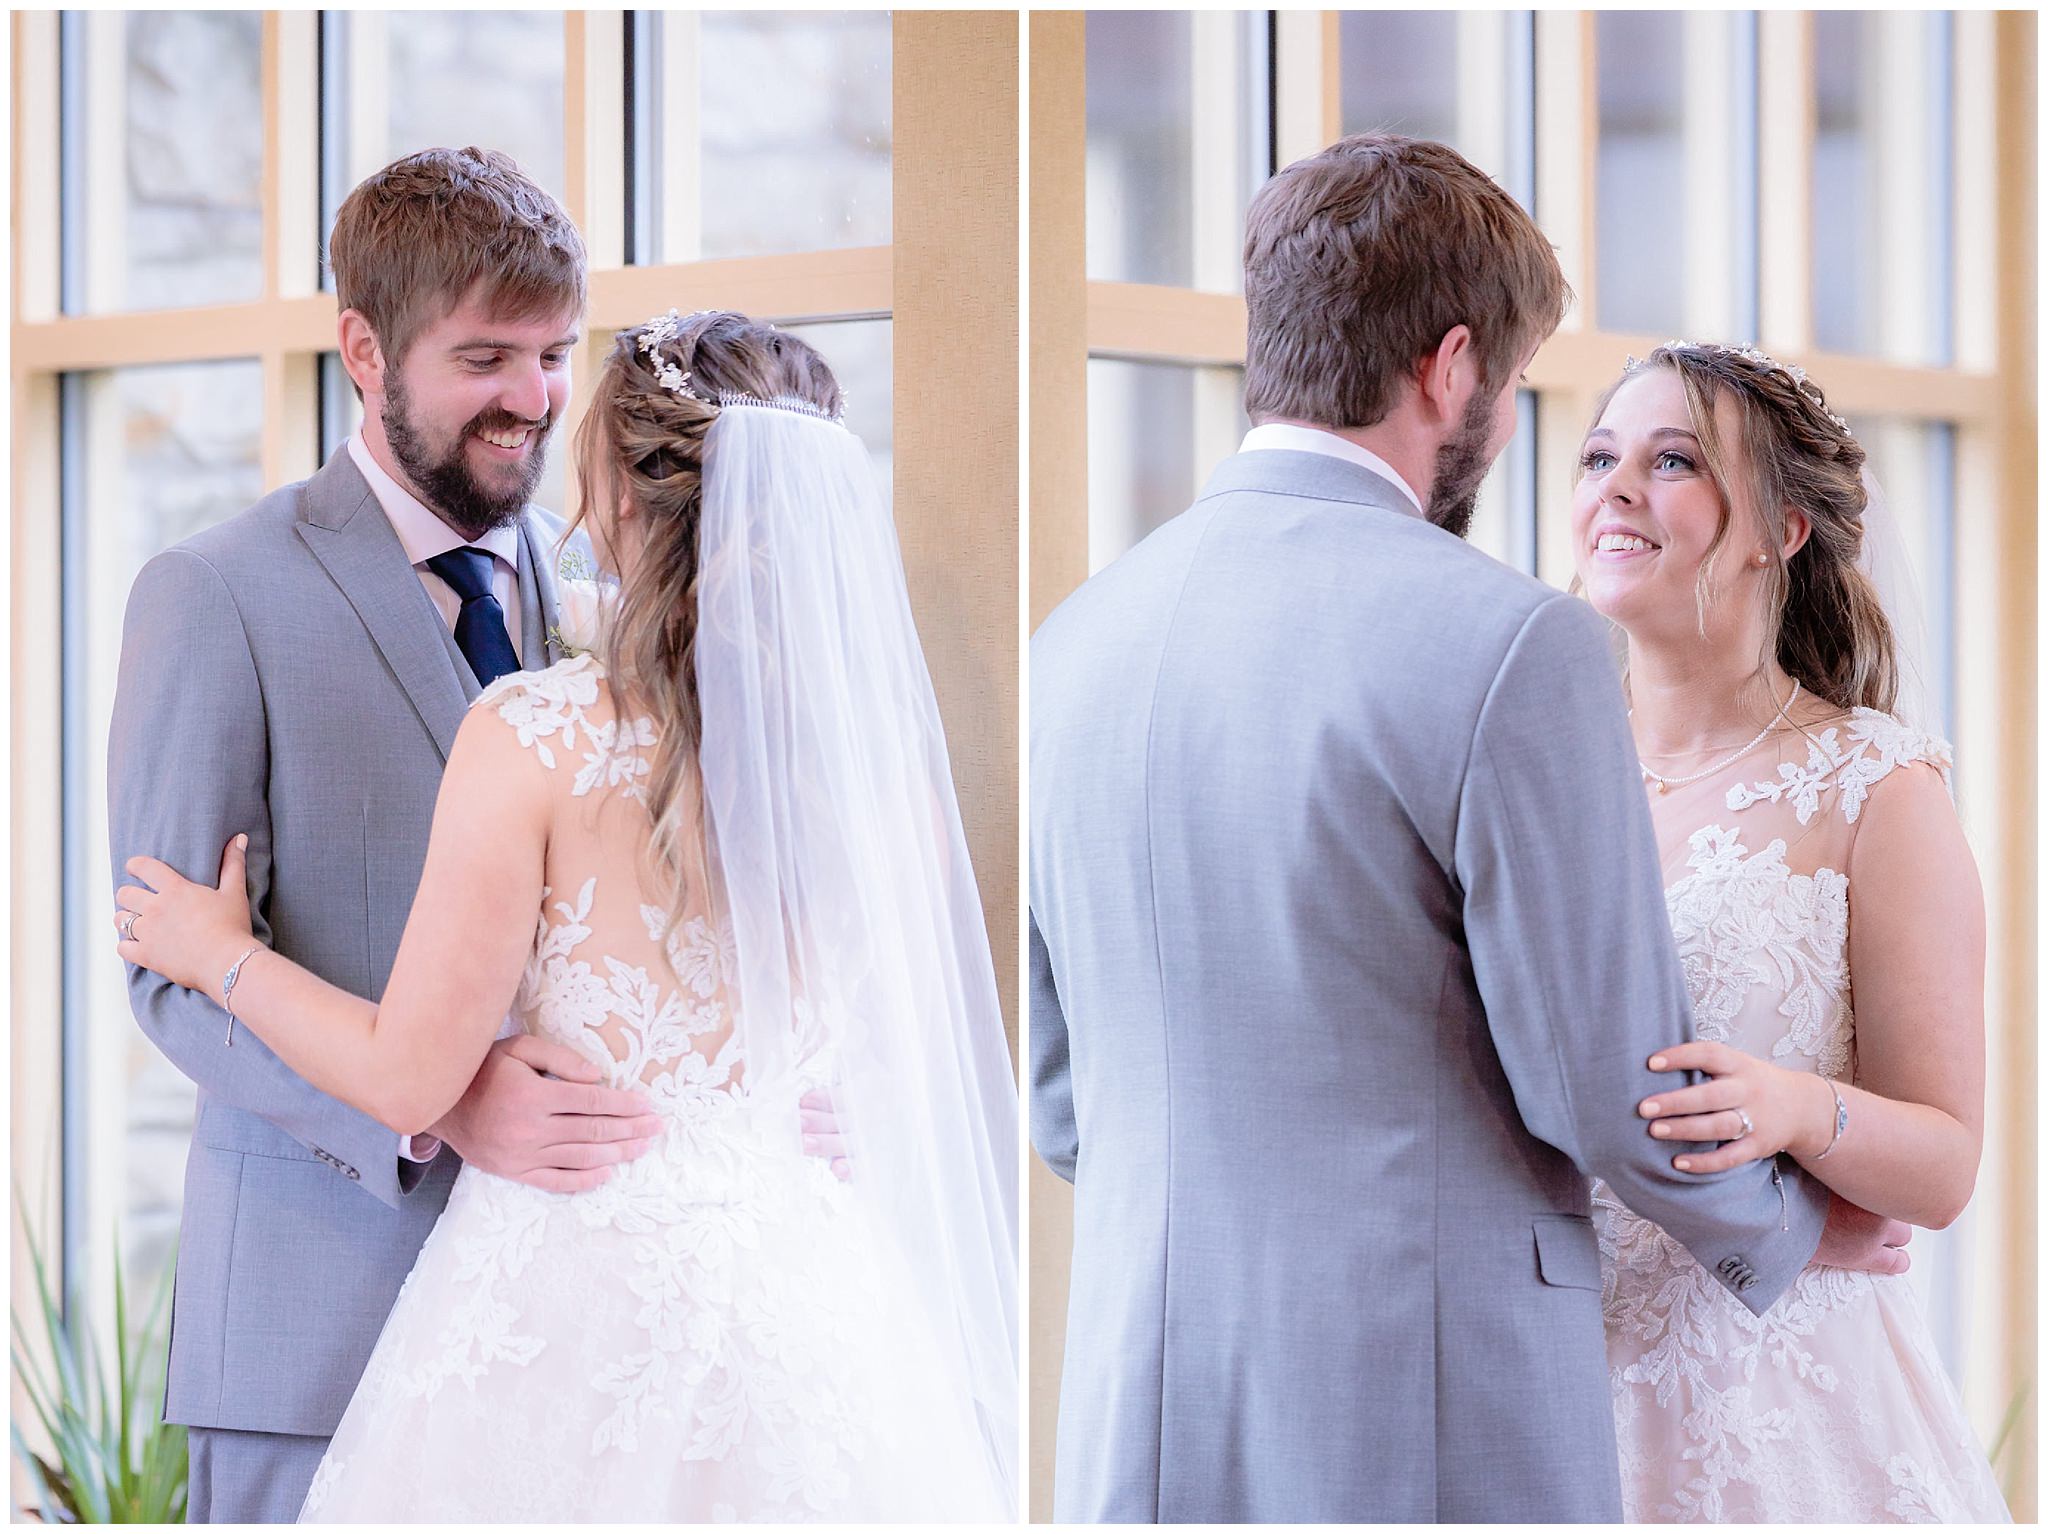 Bride & groom smile at each other during portraits at Oglebay